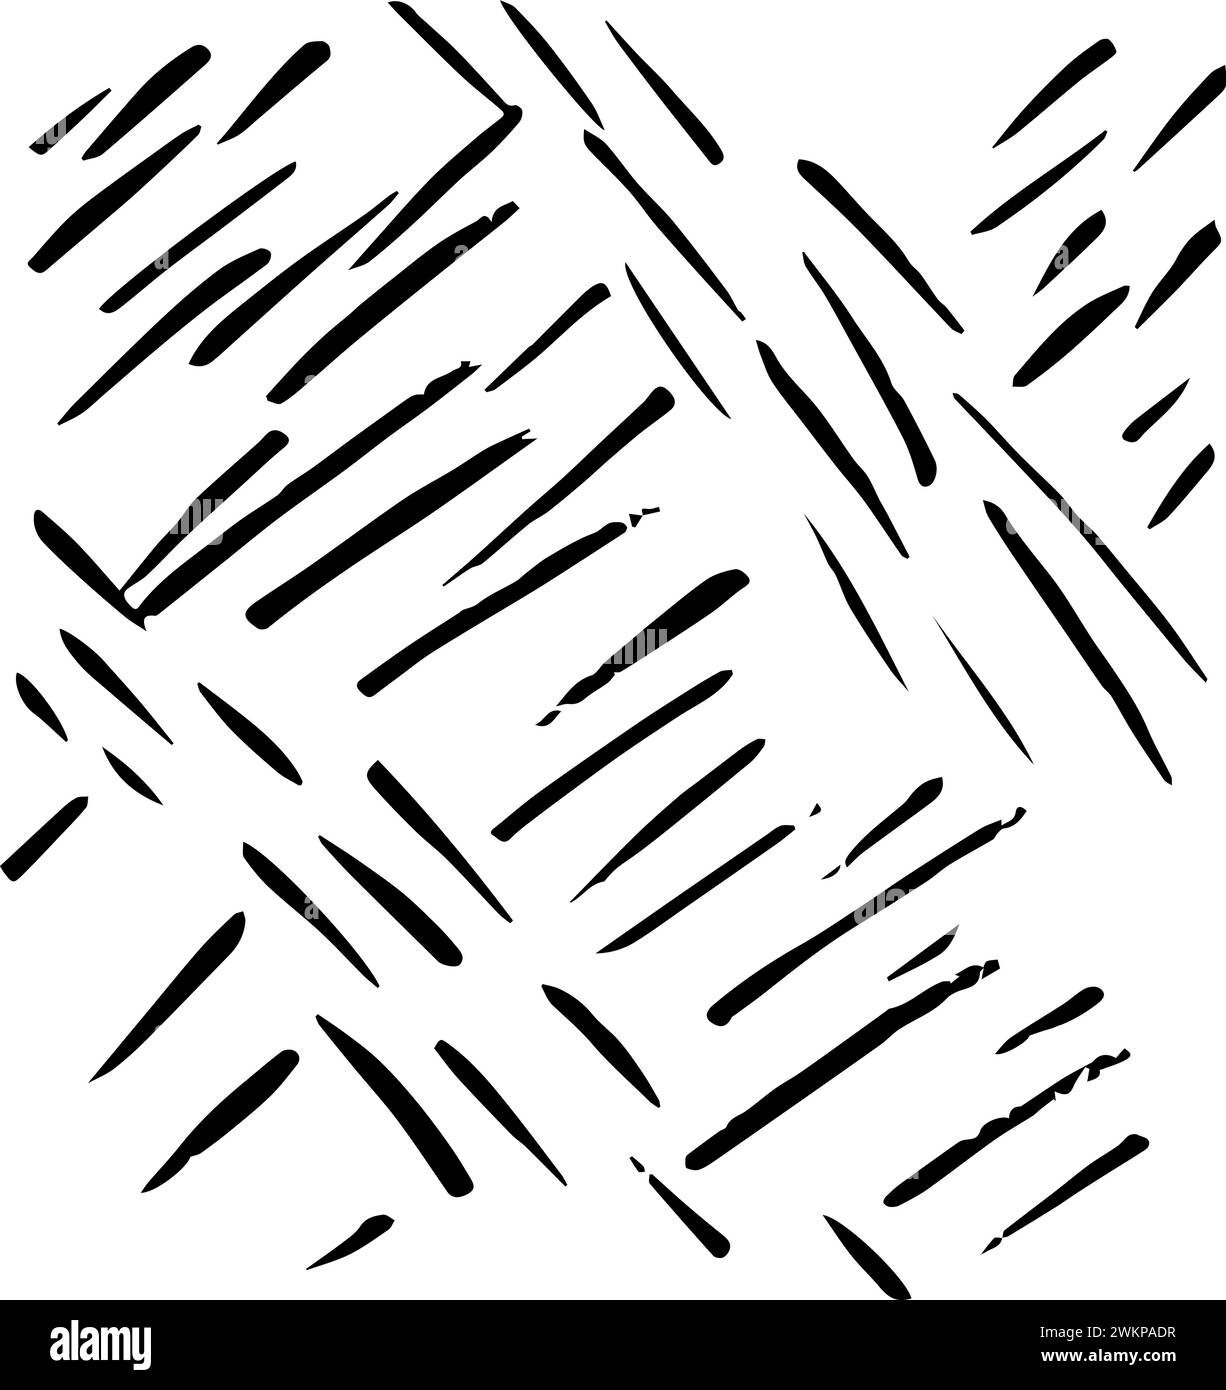 Coups courts dans différentes directions. Fond abstrait monochrome. Illustration vectorielle isolée sur fond blanc. Illustration de Vecteur